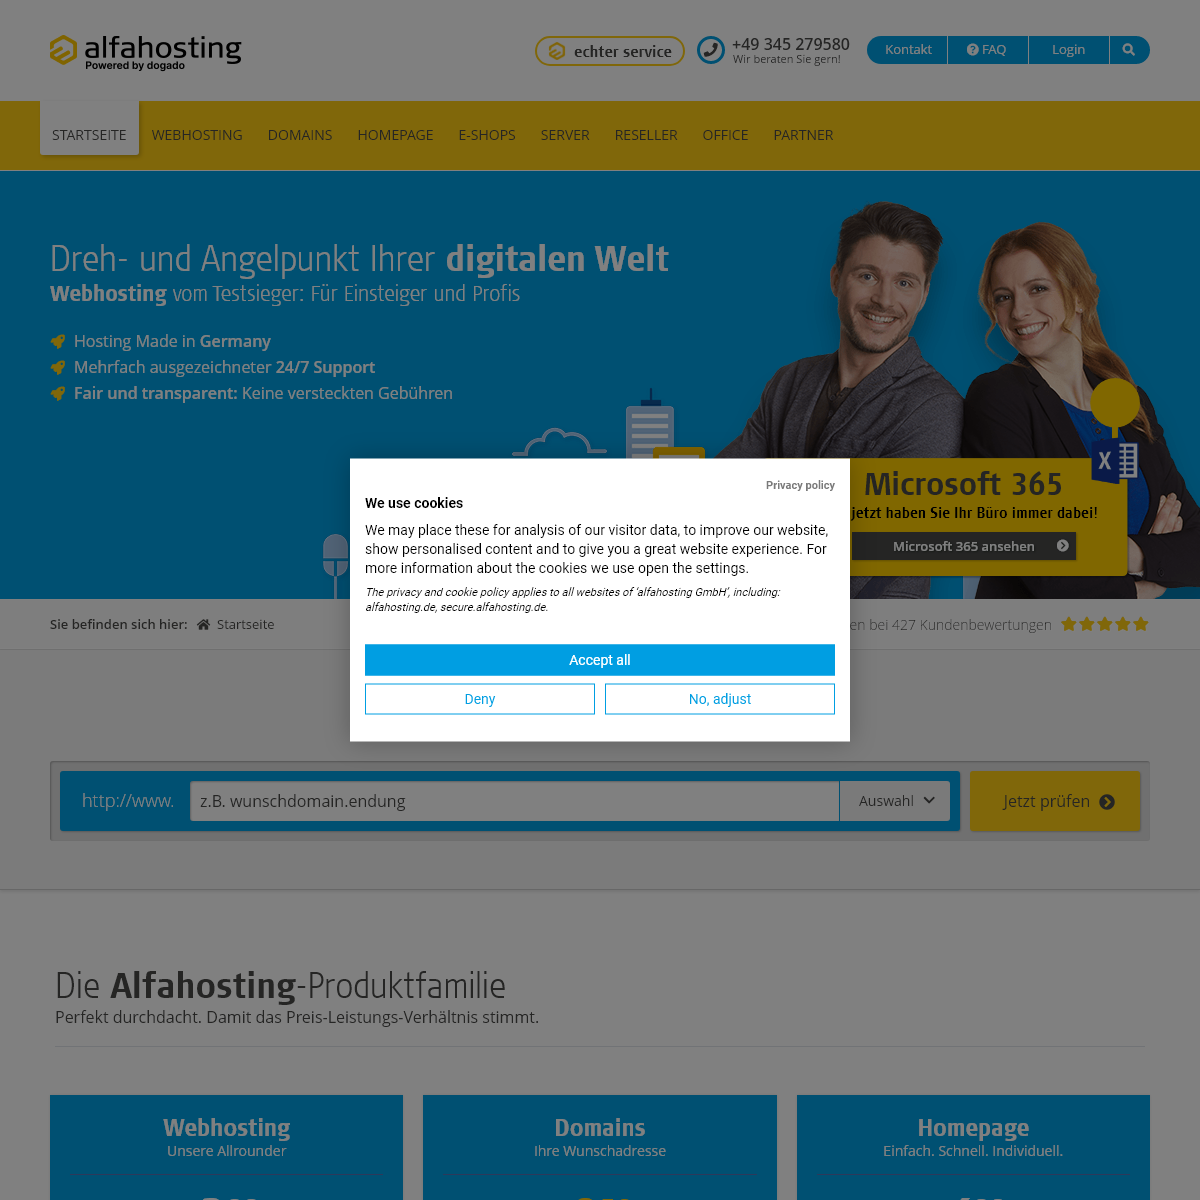 gÃ¼nstige Hosting-Angebote - Alfahosting.de